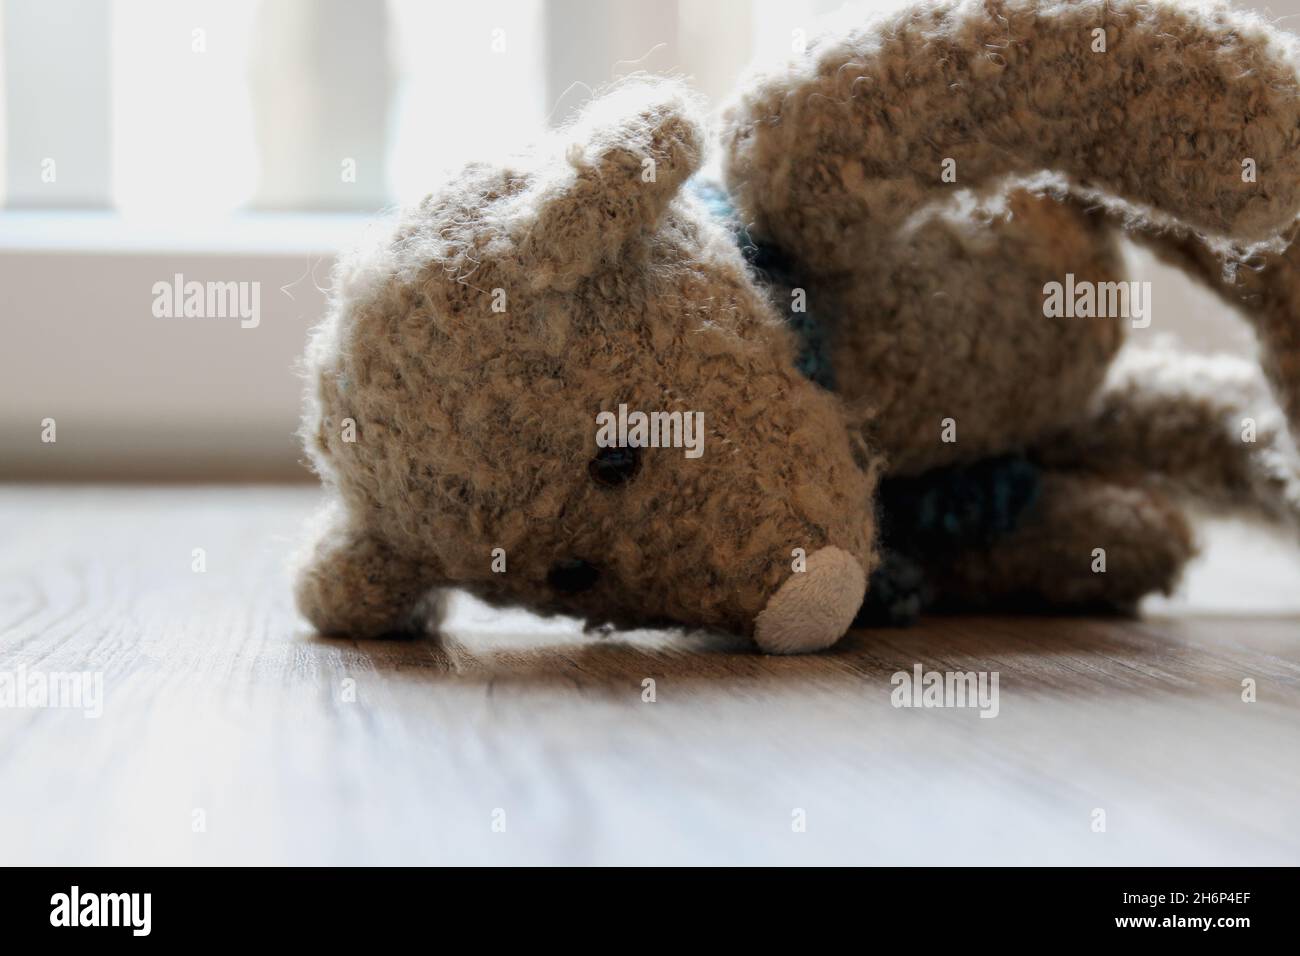 Ein Kuscheltier, Teddy, mit einem blauen Schal, liegend auf einem grauen Holzboden. Stock Photo